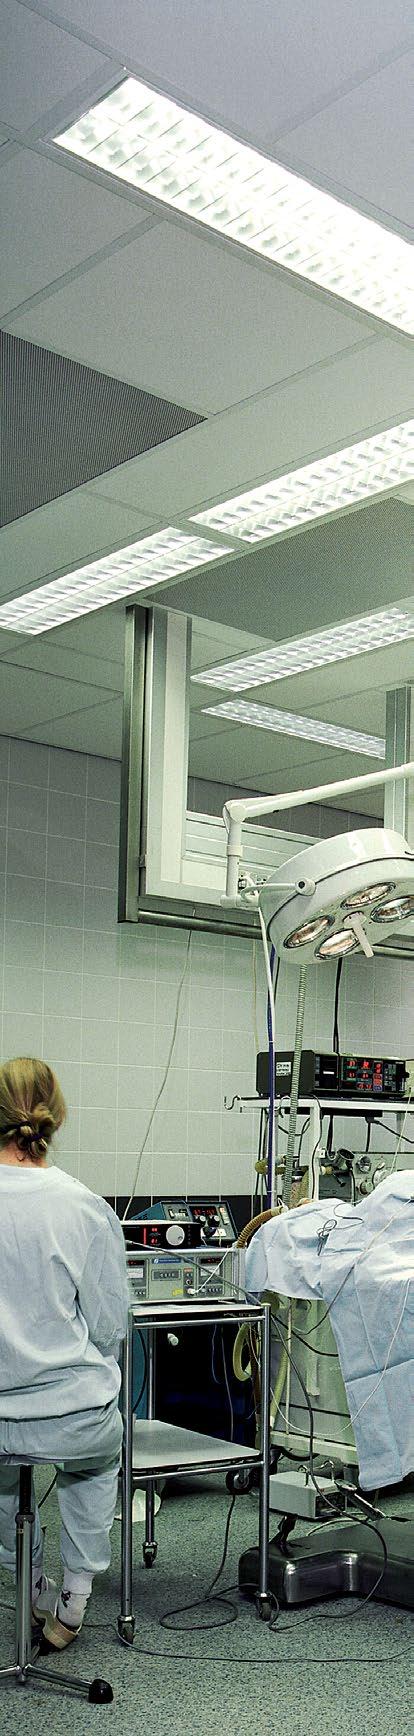 MediCare Air Akoestisch plafondpaneel voor ruimtes waar drukverschillen voorkomen (bijv.